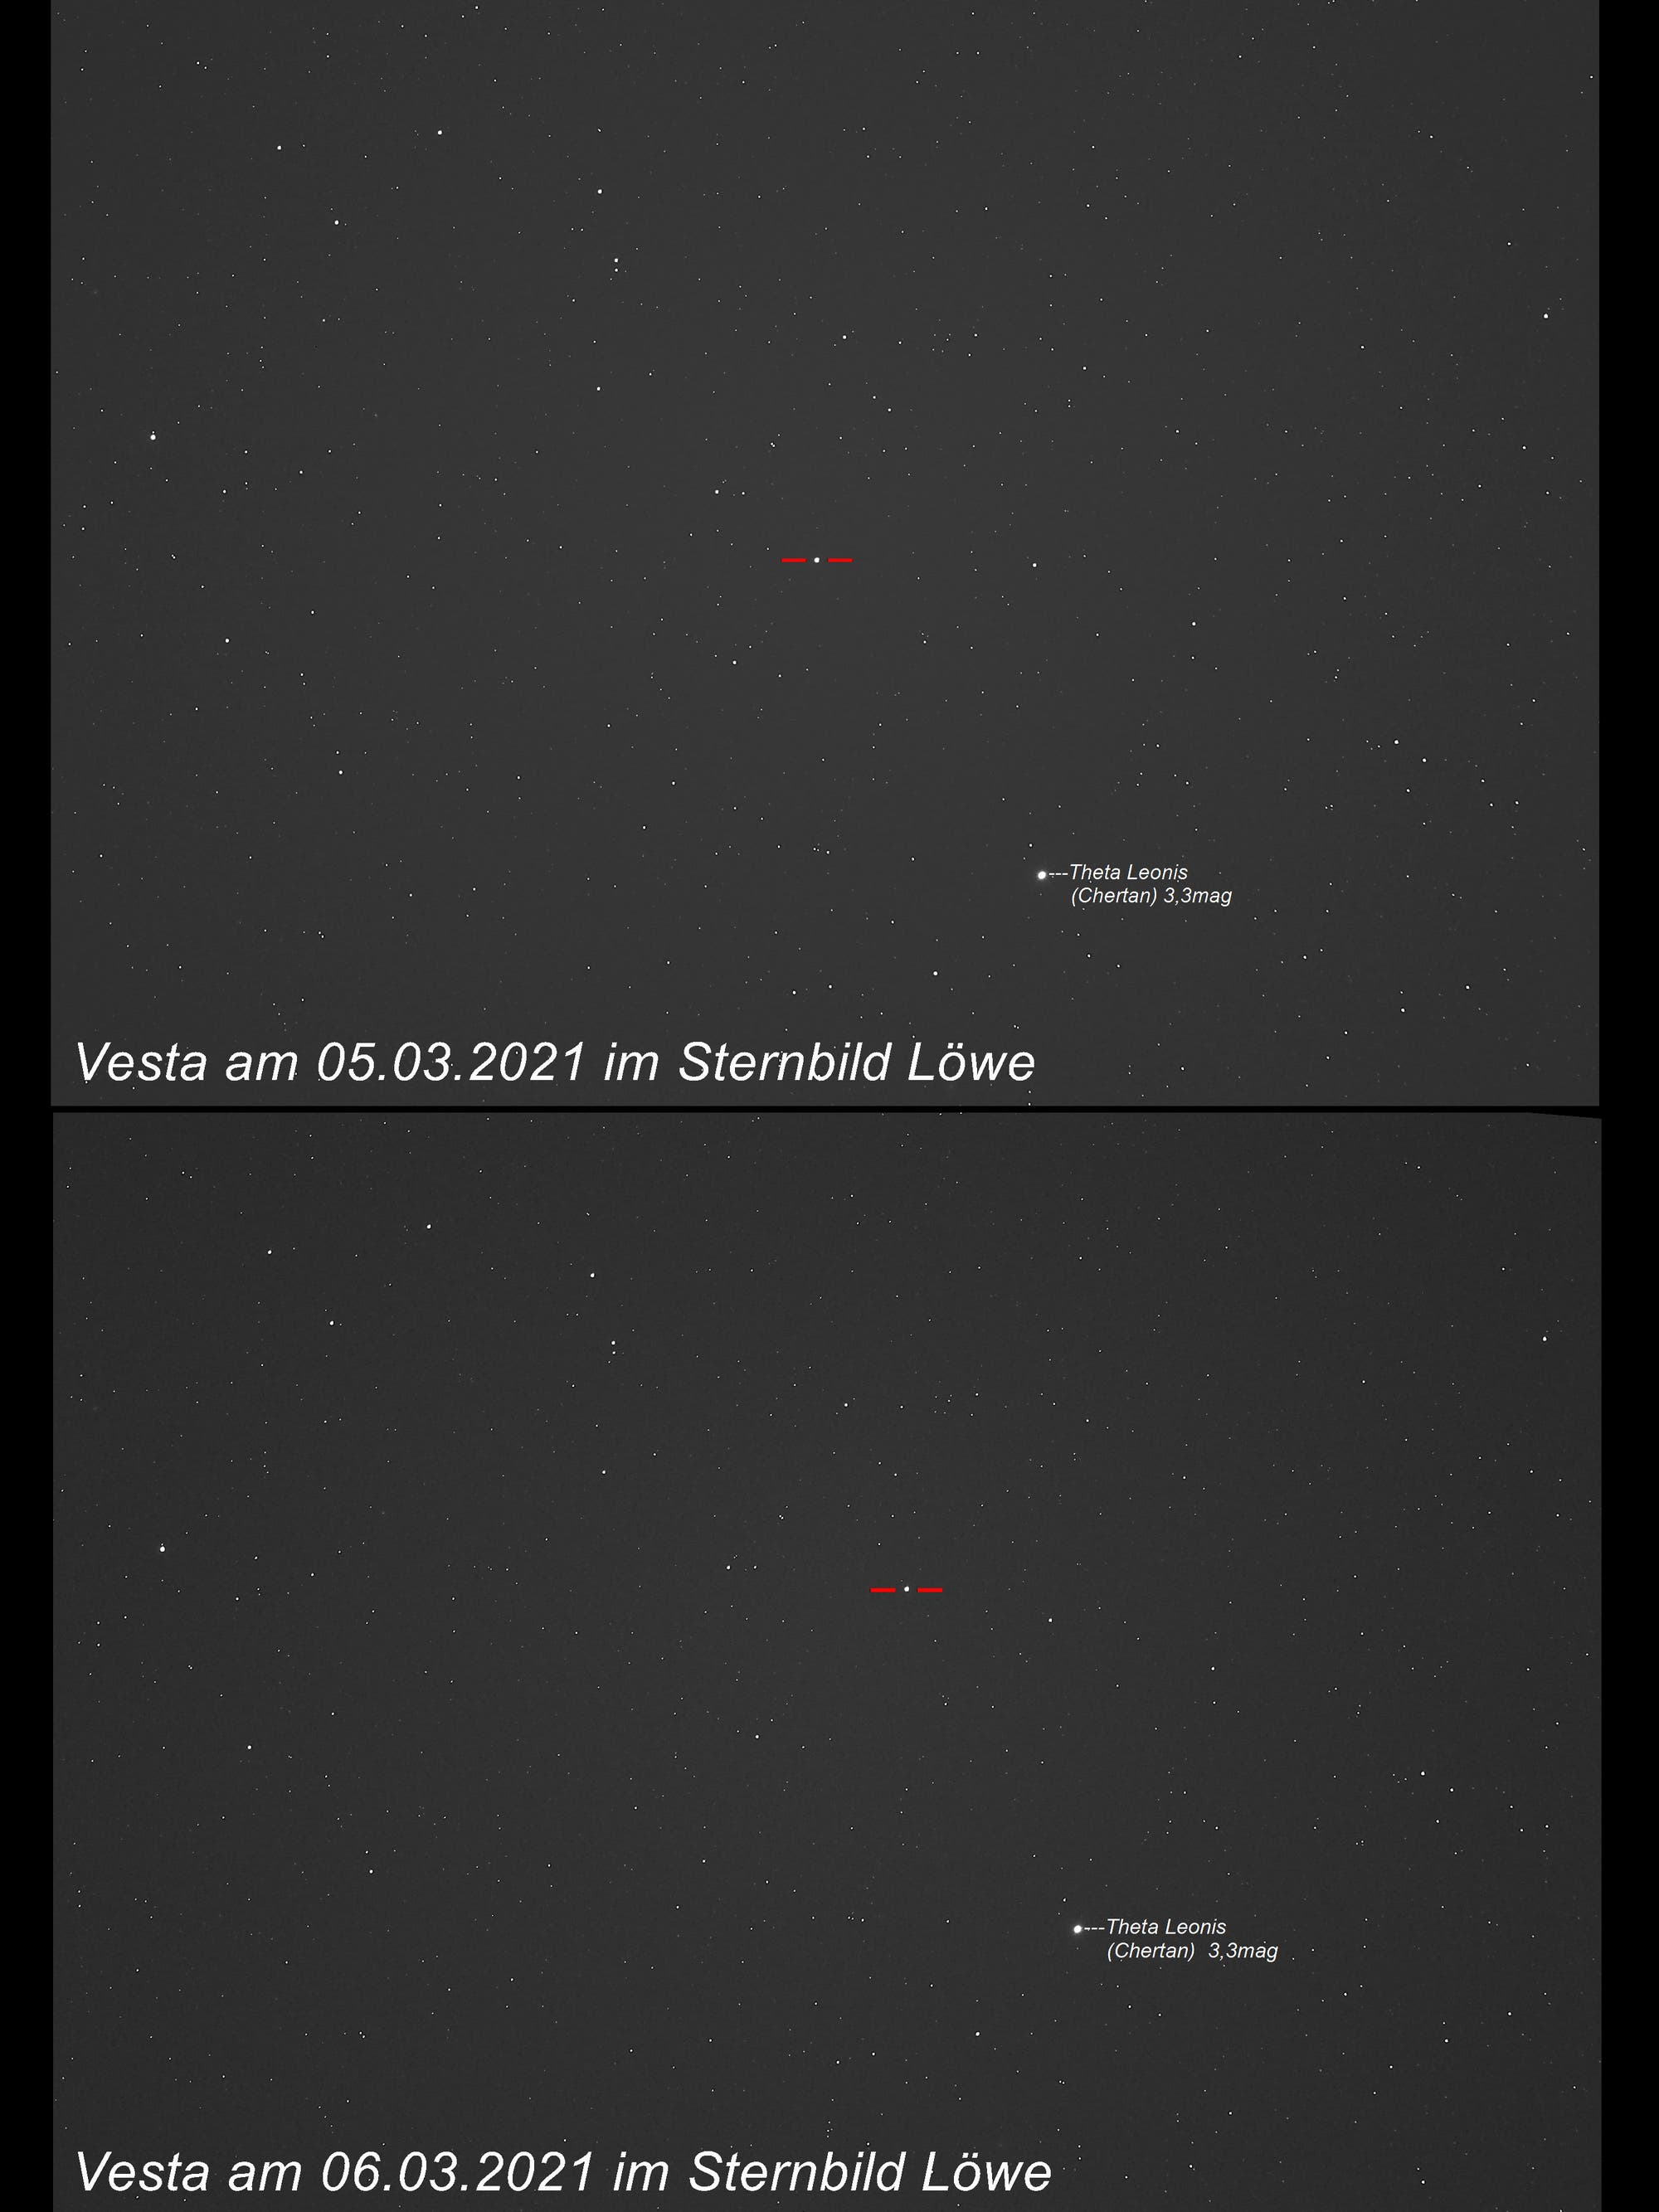 Vesta unterwegs im Sternbild Löwe